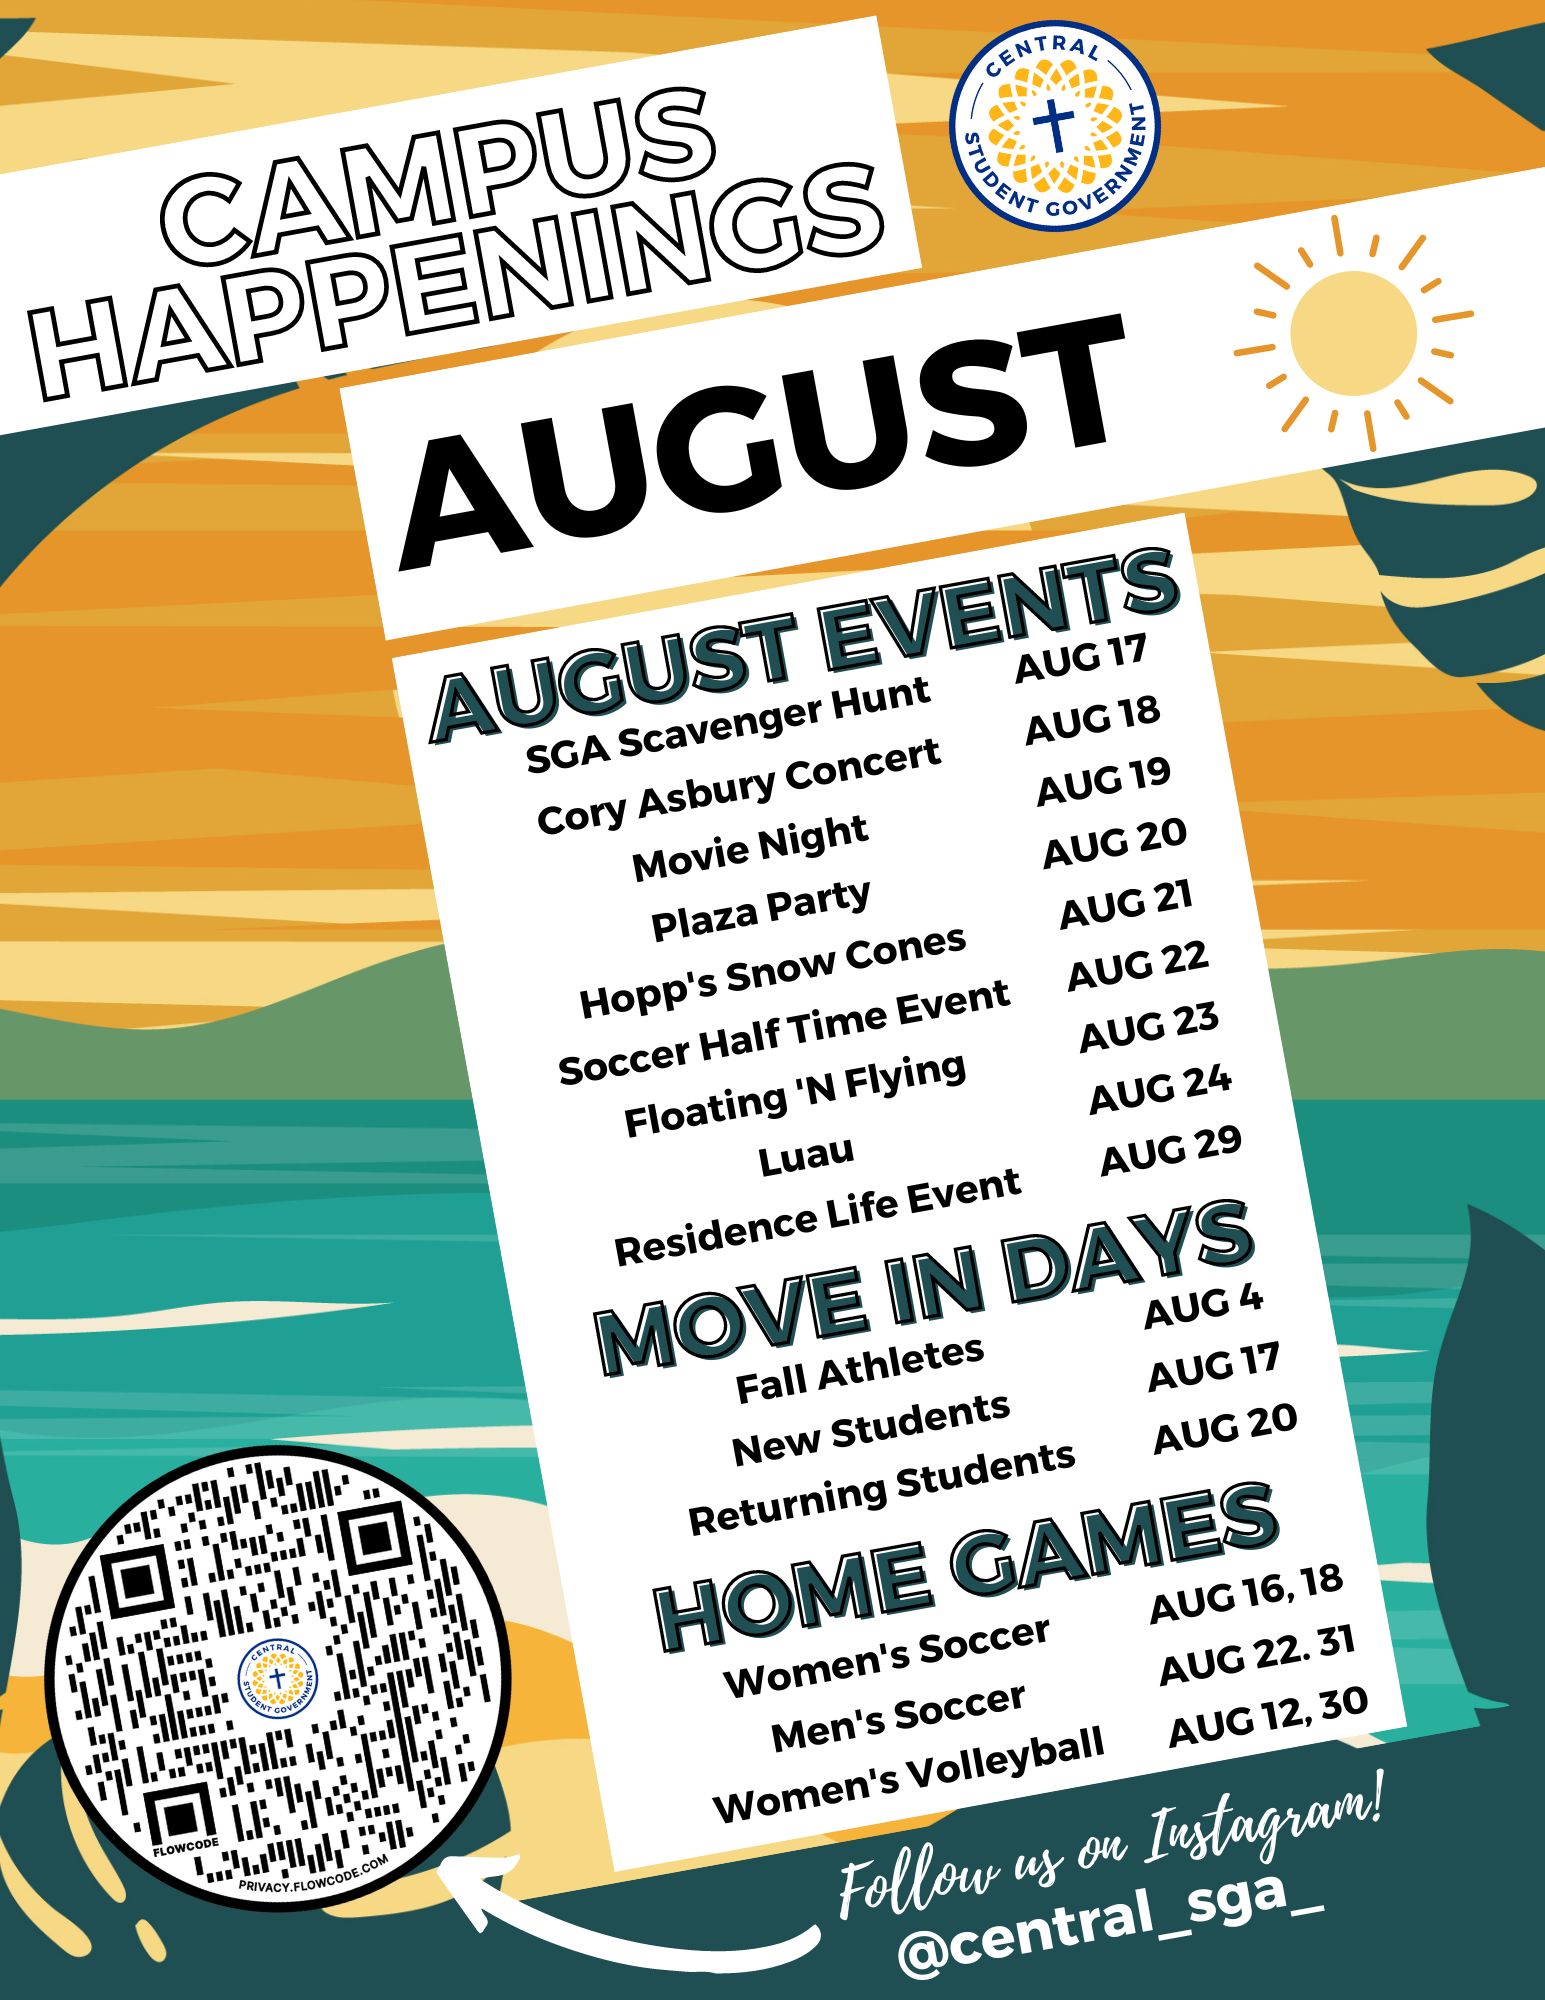 Campus Happenings - SGA August Events